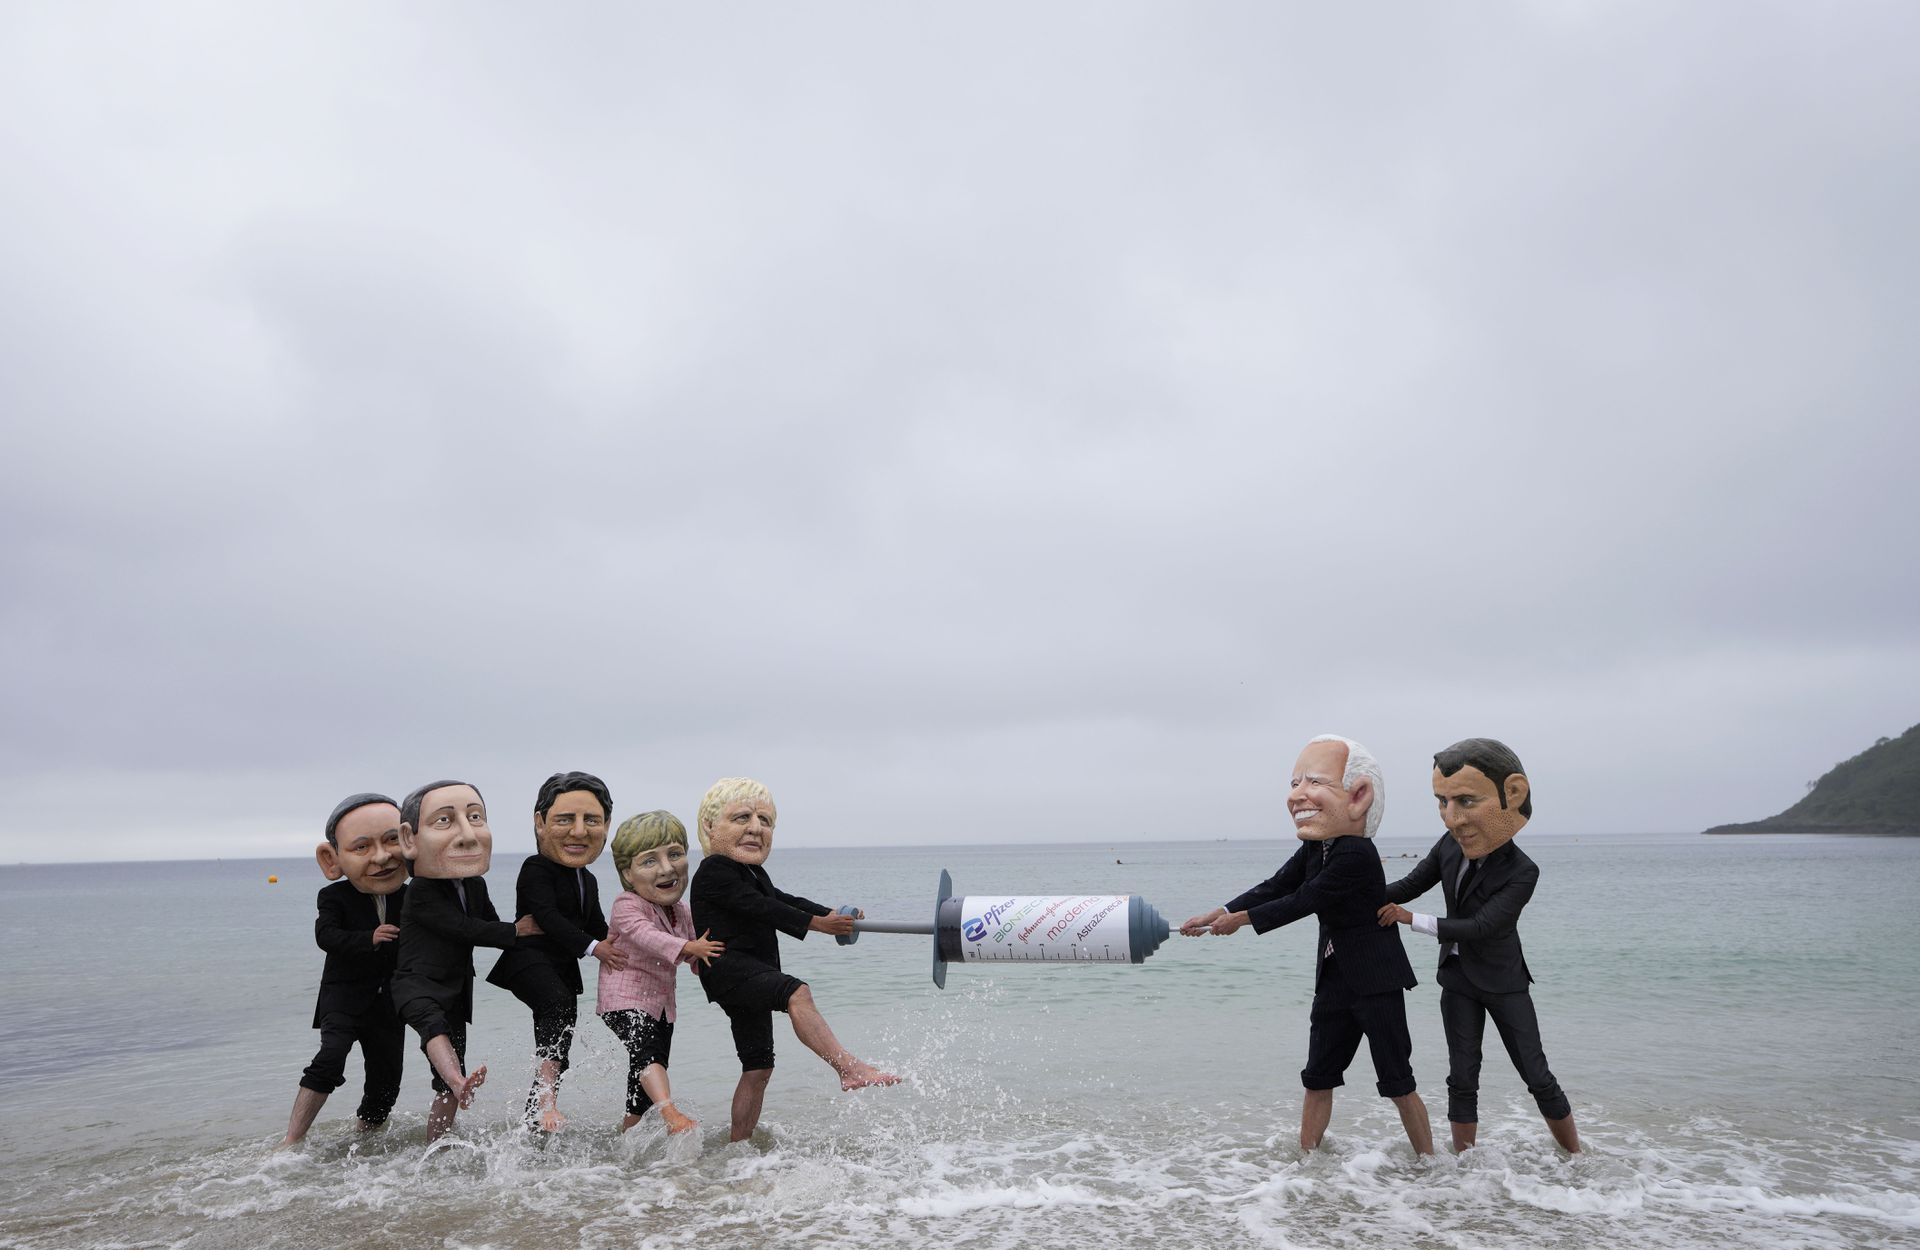 2021 年 6 月 11 日，在英国康沃尔举行的 G7 峰会期间，某NGO在法尔茅斯的 Gyllyngvase 海滩上带着七国领导人的仿真道具举行抗议。画面中，扮演七国领导人的活动家们争抢一个大针筒，以此讽刺G7成员国在疫苗接种问题上反复无常的糟糕表现。（AP）